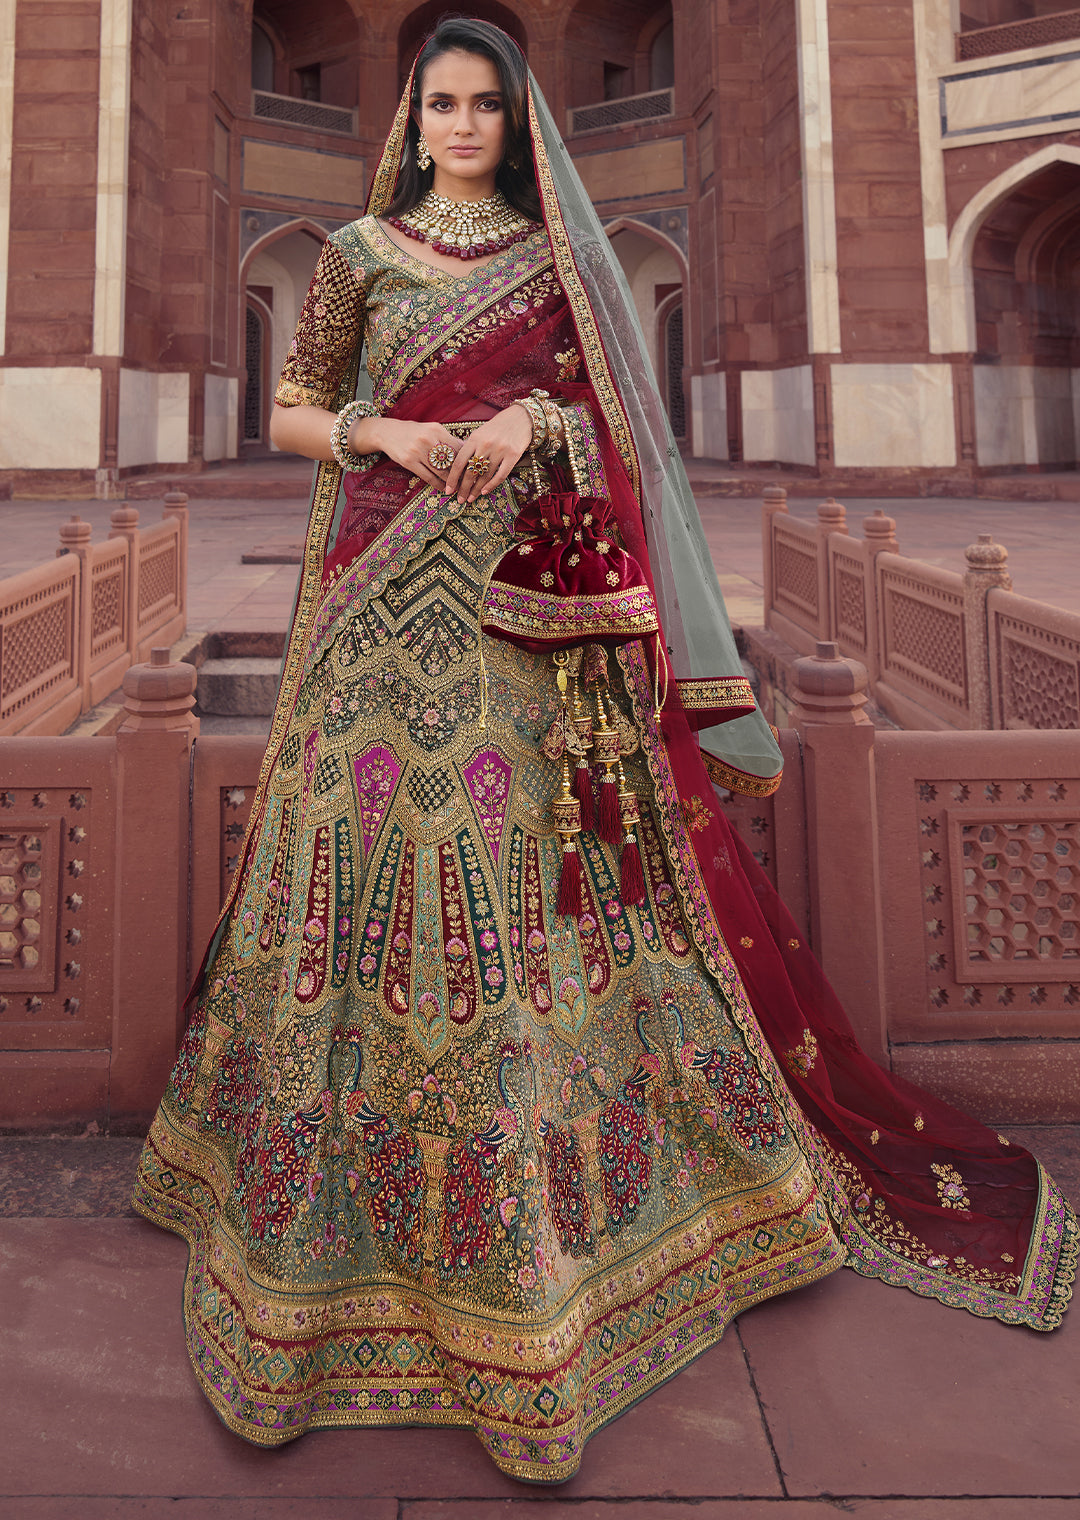 Bridal Lehengas: Best Designer Bridal Lehegas for Your Pheras | Vogue India  | Vogue India